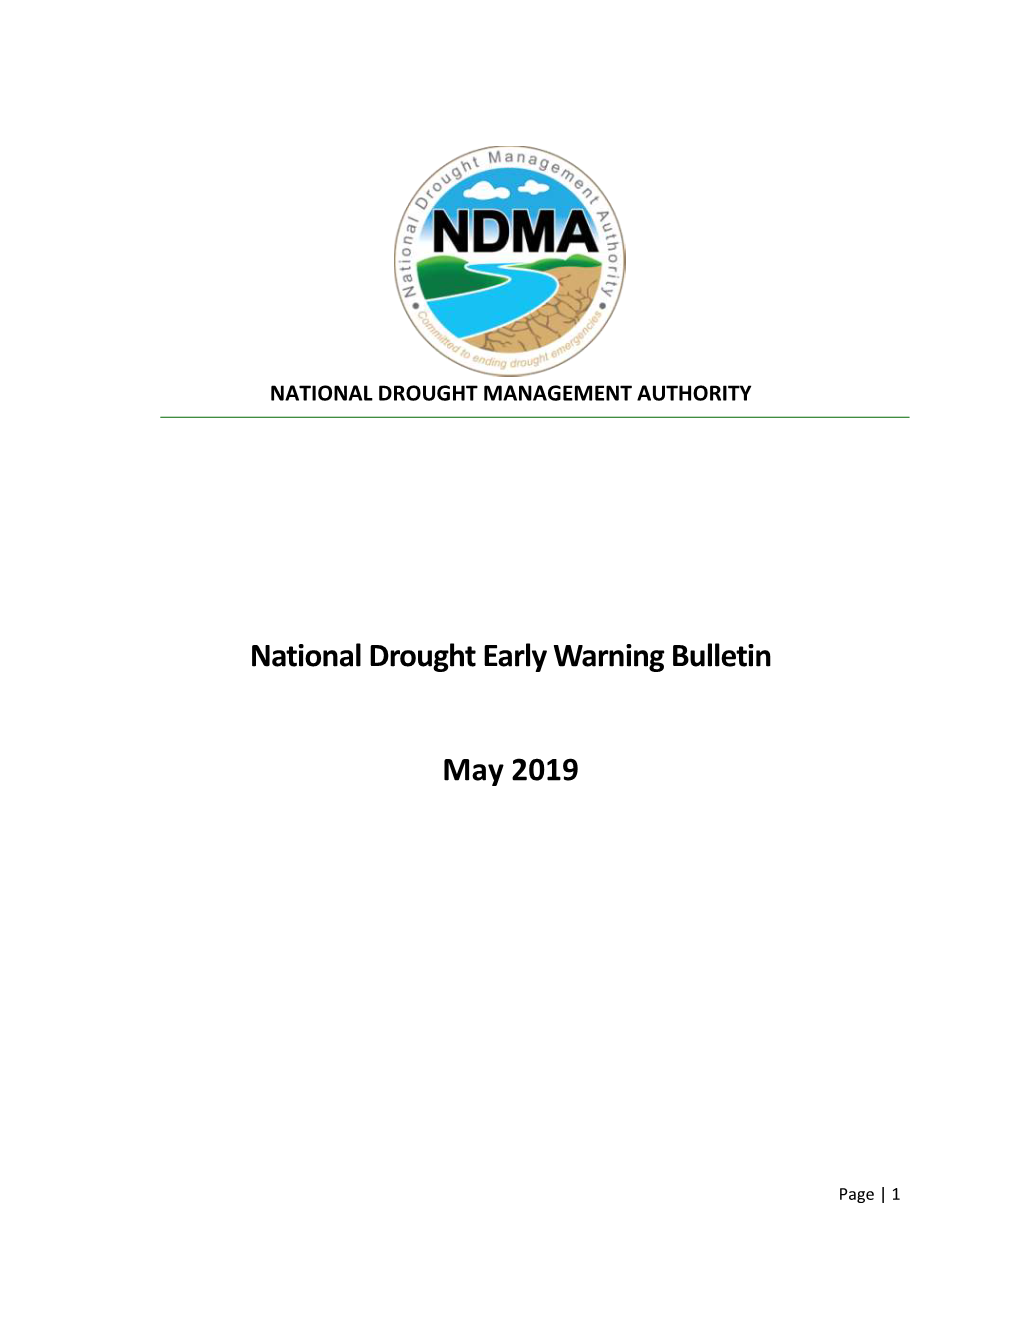 National Drought Early Warning Bulletin May 2019